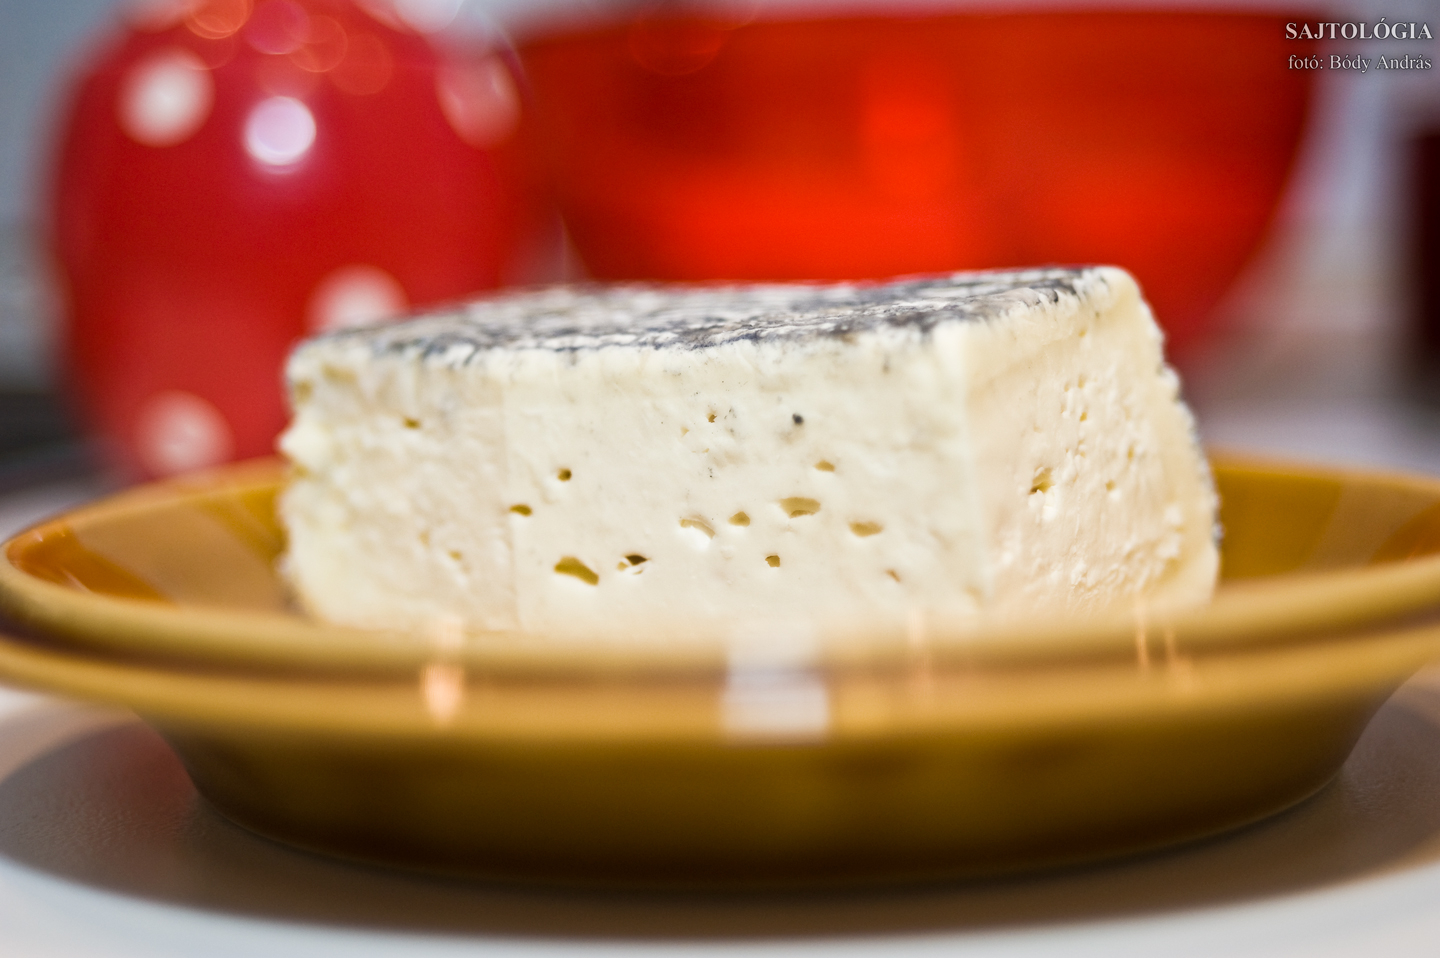 Bükki faszenes sajt: kívül nemes penészes és faszén poros, belül rugalmas és enyhén omlós tésztájú, könnyen vágható sajt. Szezontól függően lehet kecsketejből készült faszenest is kapni, mely belül még lágyabb.